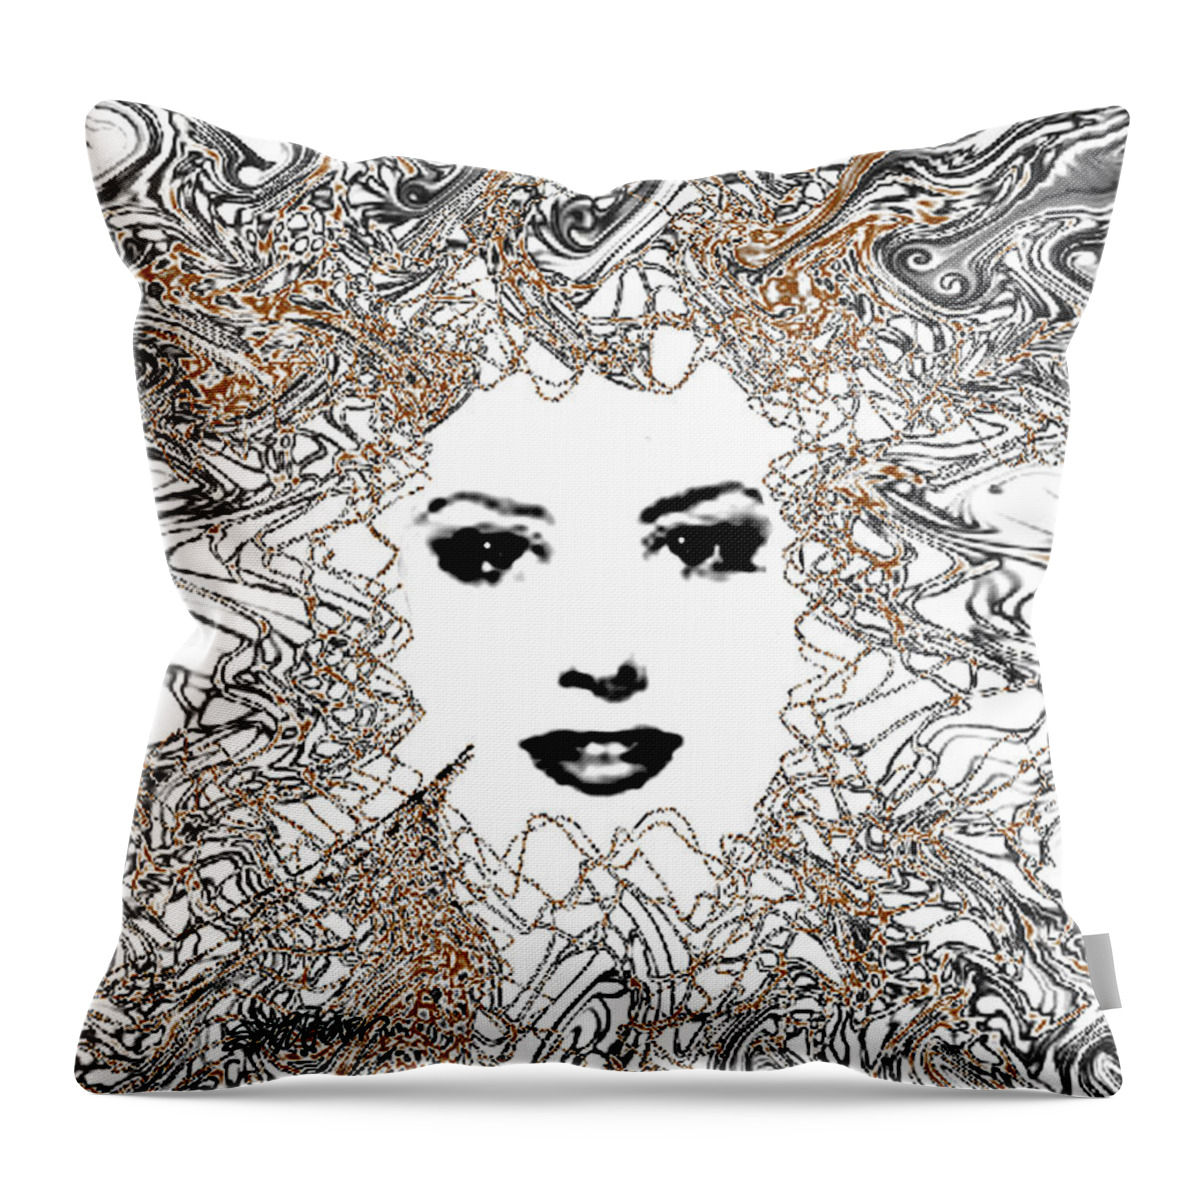 Hair Throw Pillow featuring the digital art Hair Thair and Everywhair Mara by Seth Weaver